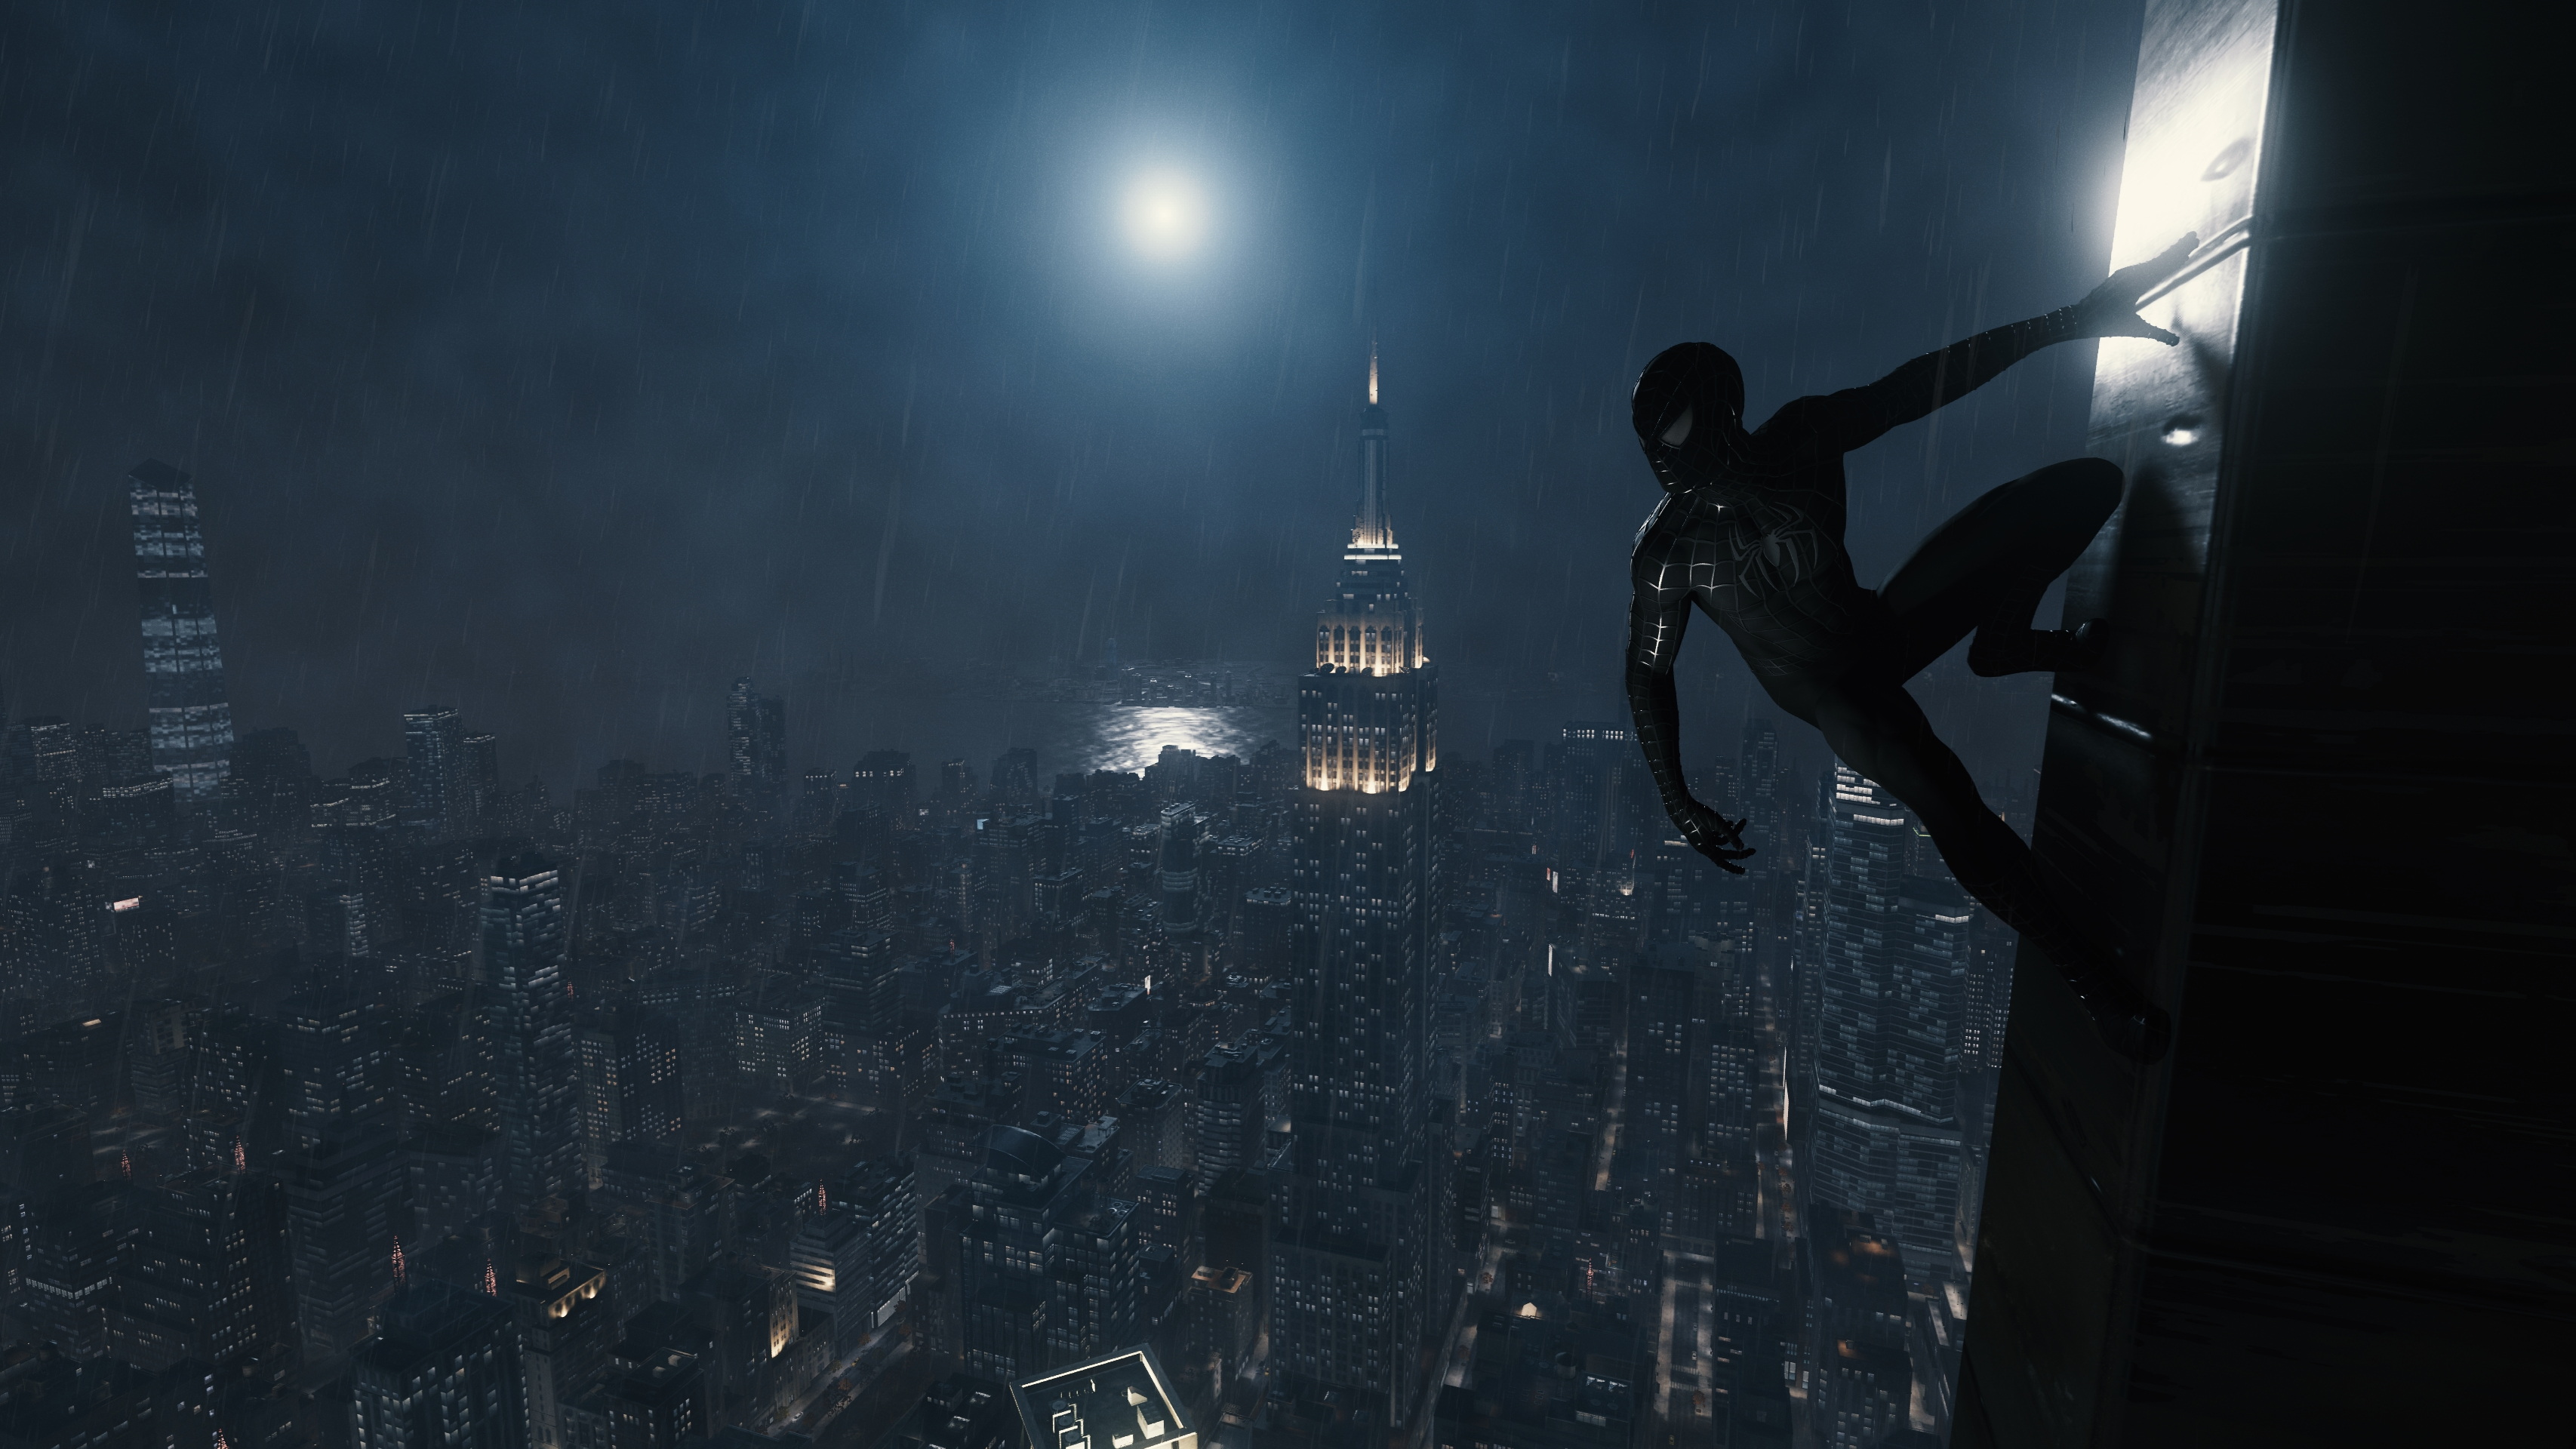 General 3413x1920 Spider-Man Spider-Man Remastered video games New York City night Insomniac Games Spider-Man (2018) superhero Marvel's Spider-Man